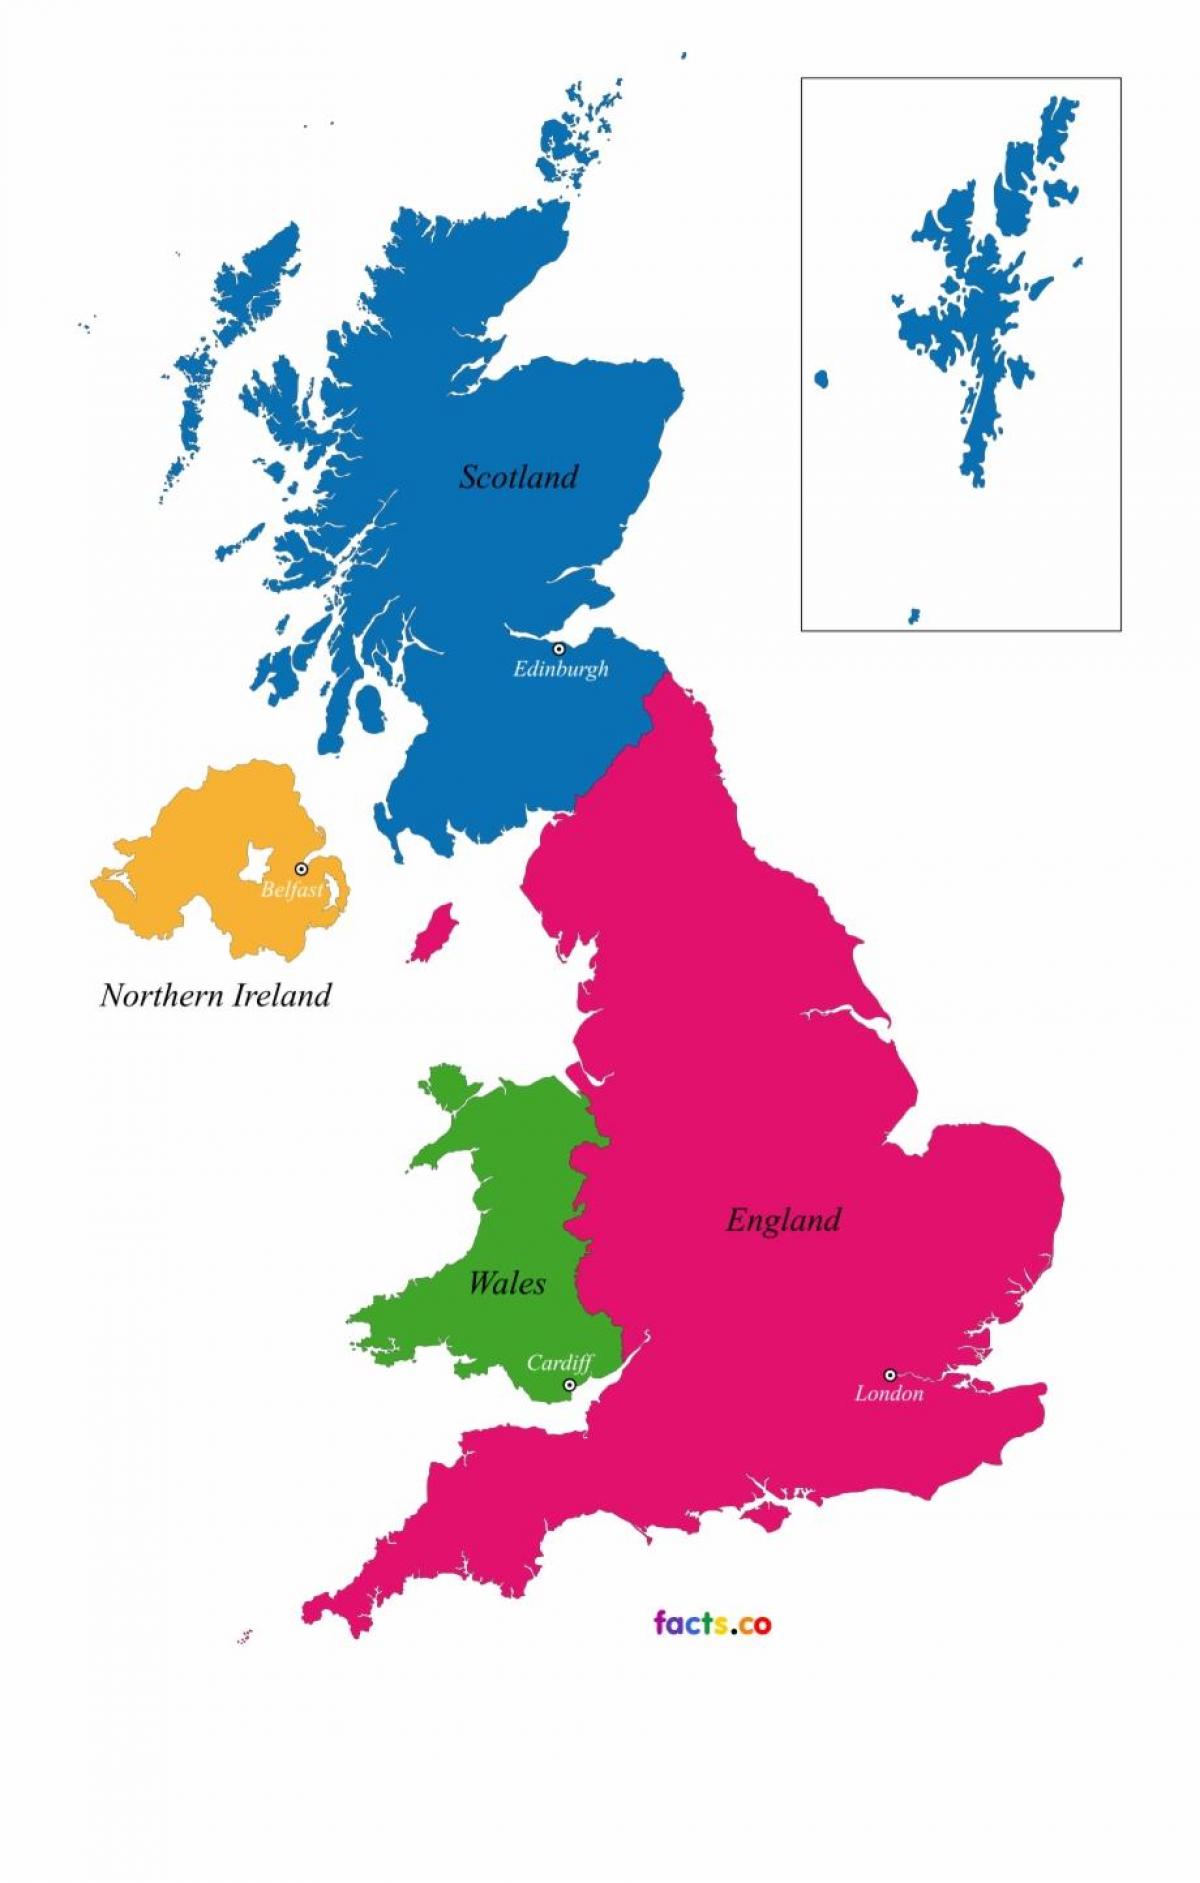 Mapa do Estado do Reino Unido (UK)